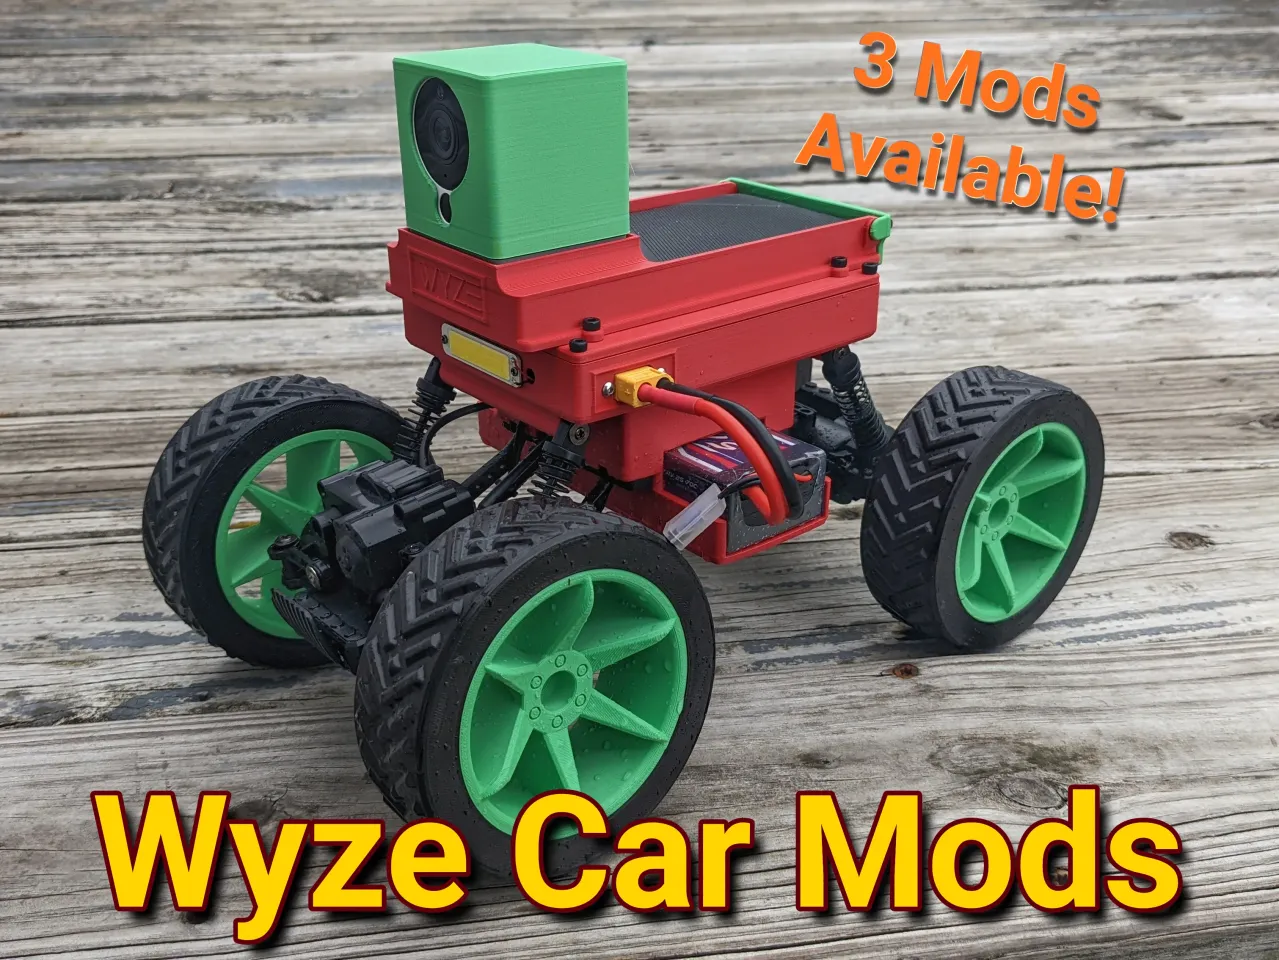 Wyze Car + Power Bank (Without Wyze Cam)